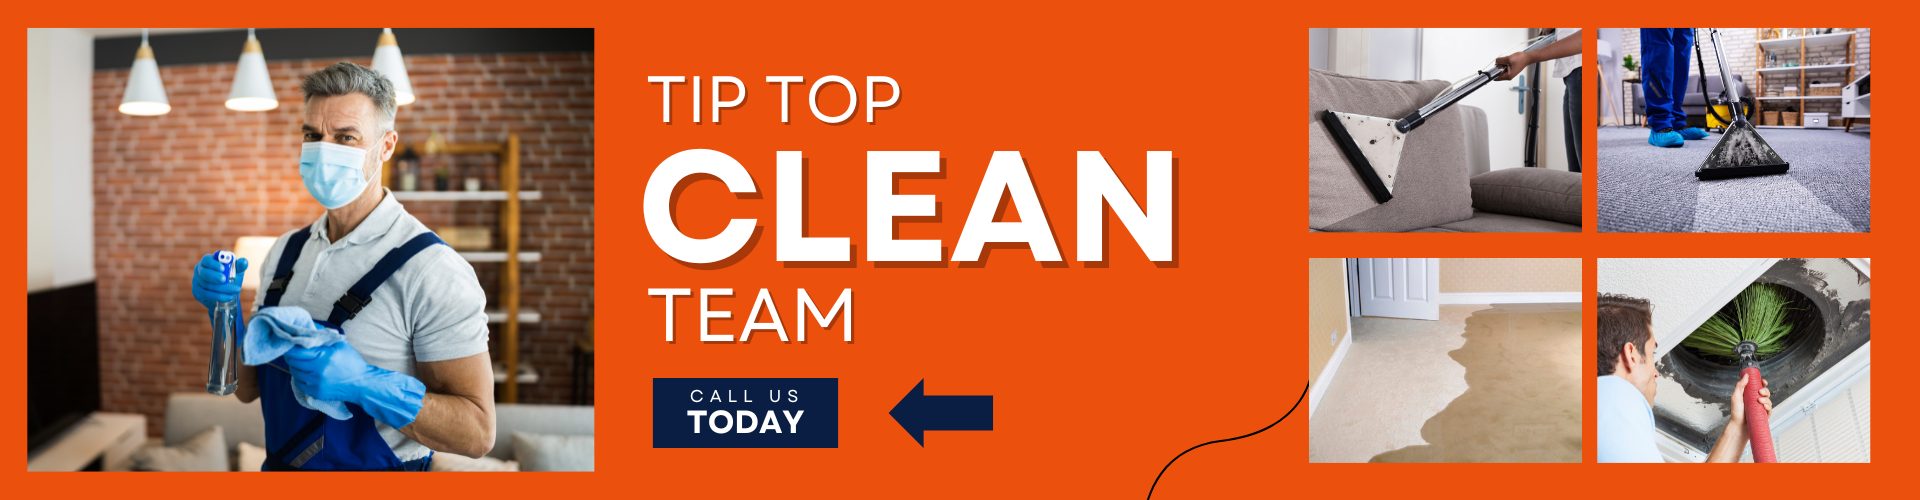 Tip Top Clean Team Homepage Banner